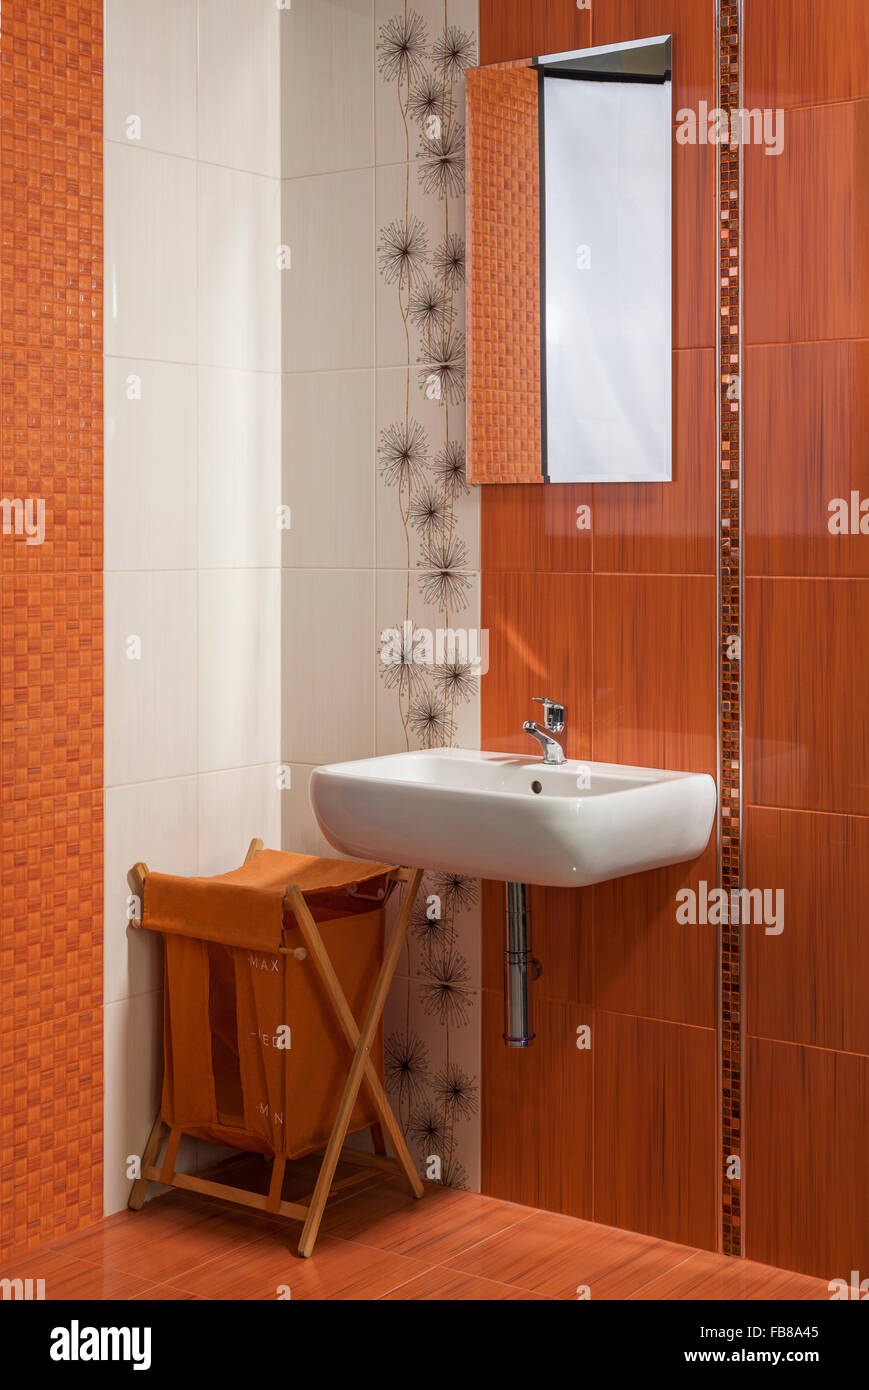 Détail d'une salle de bains privative moderne à l'intérieur orange Banque D'Images